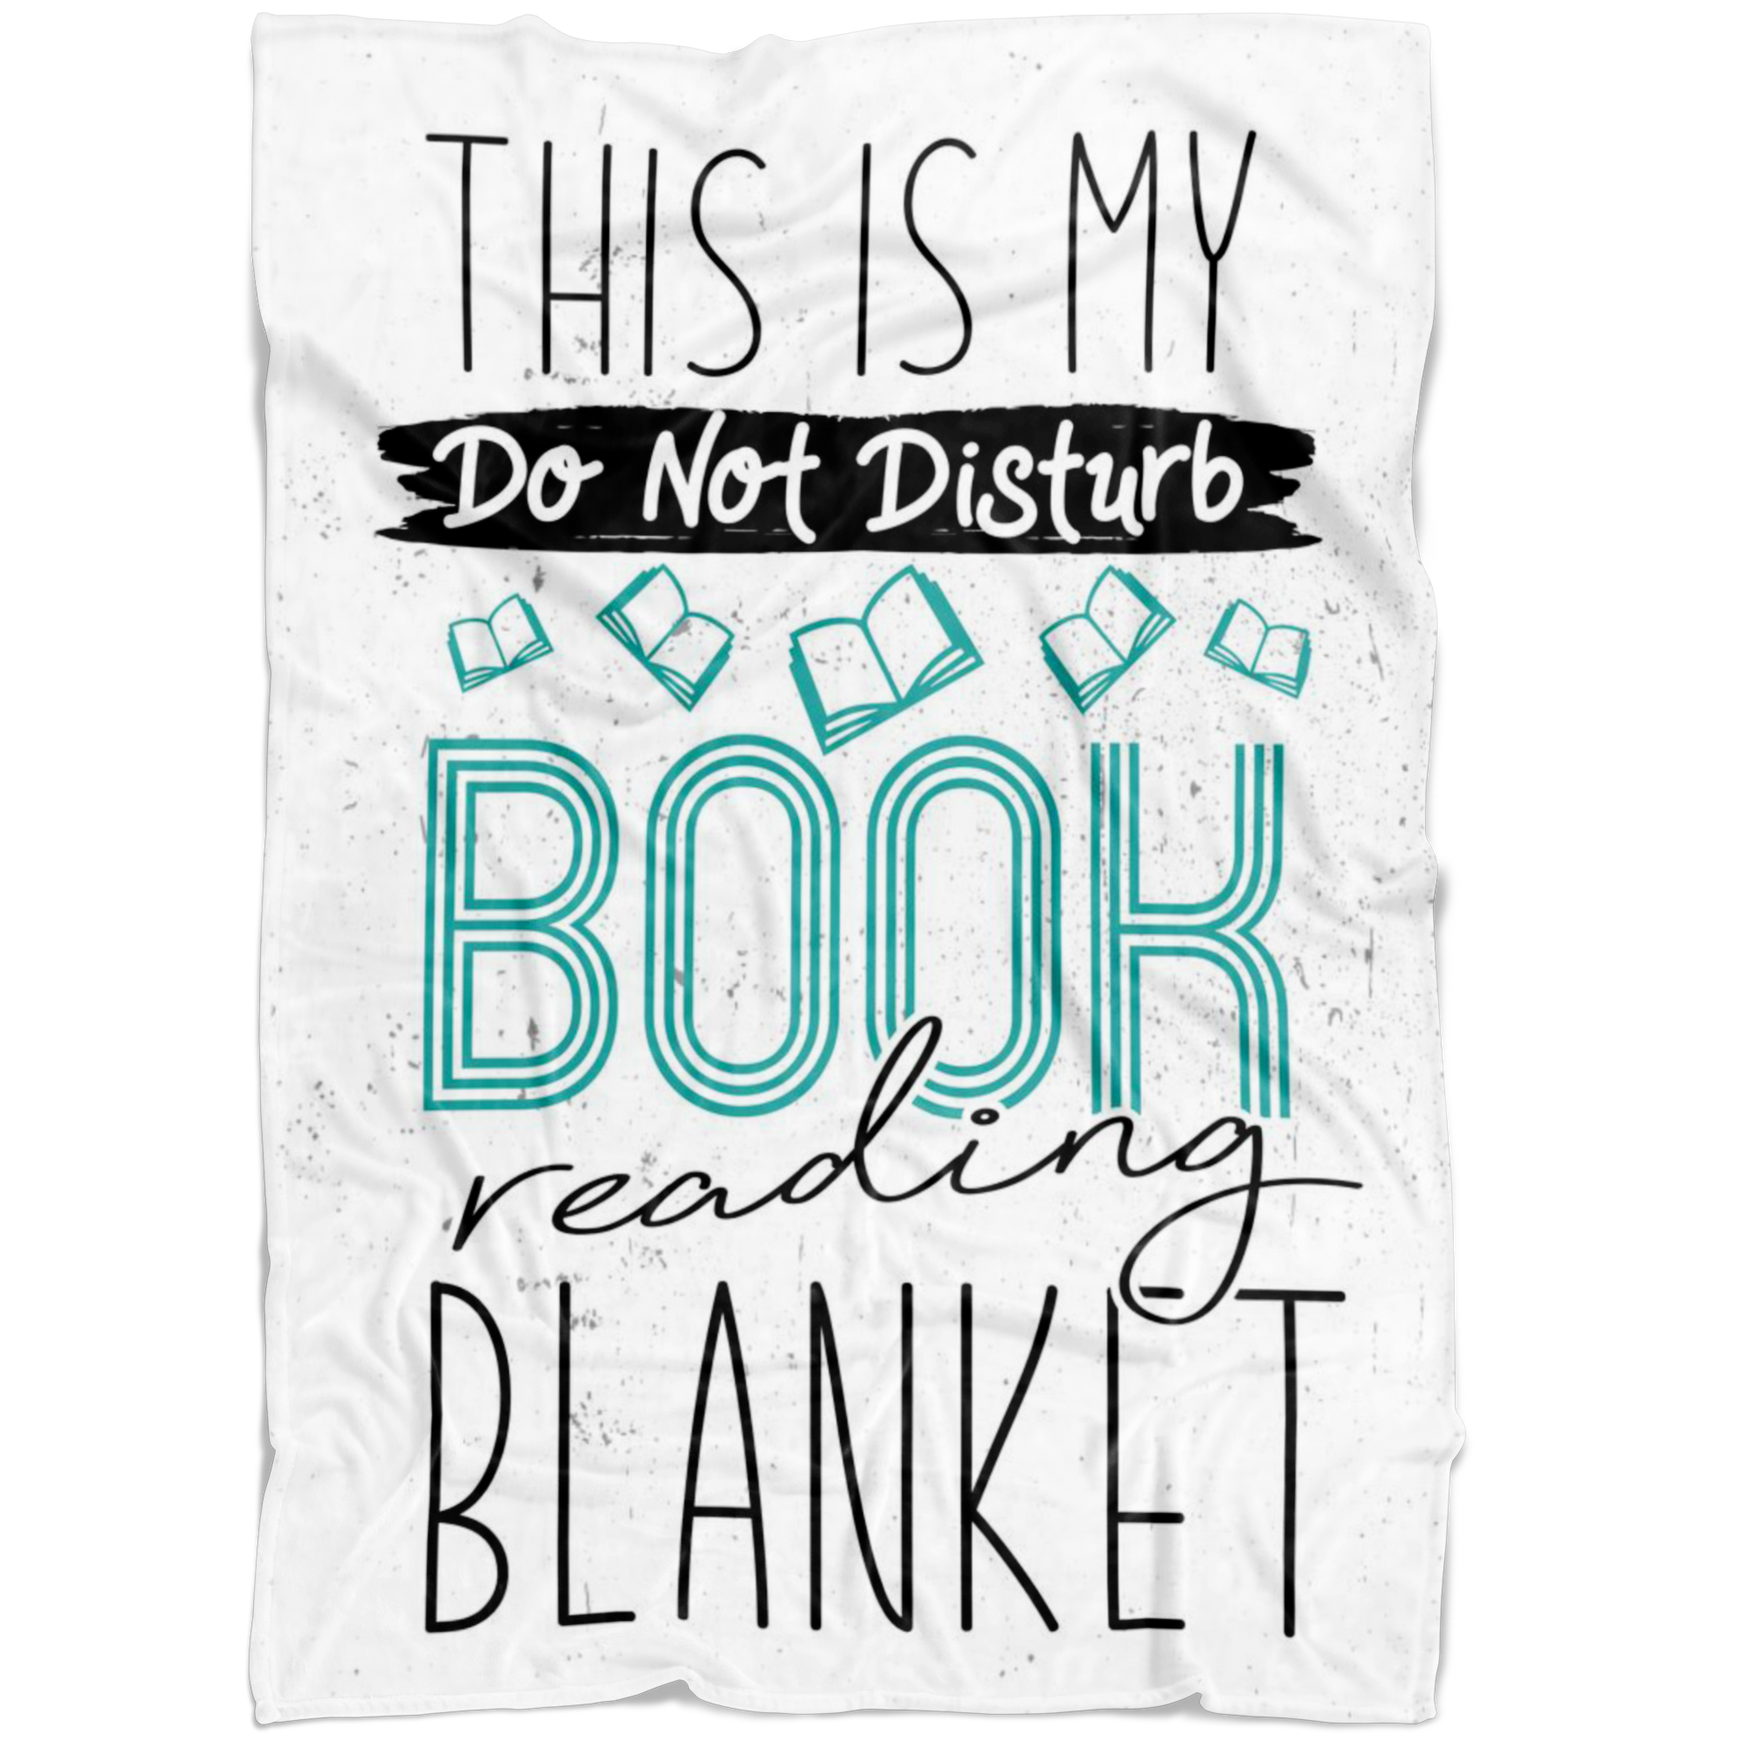 This Is My Do Not Disturb Book Reading Blanket Fleece Blanket